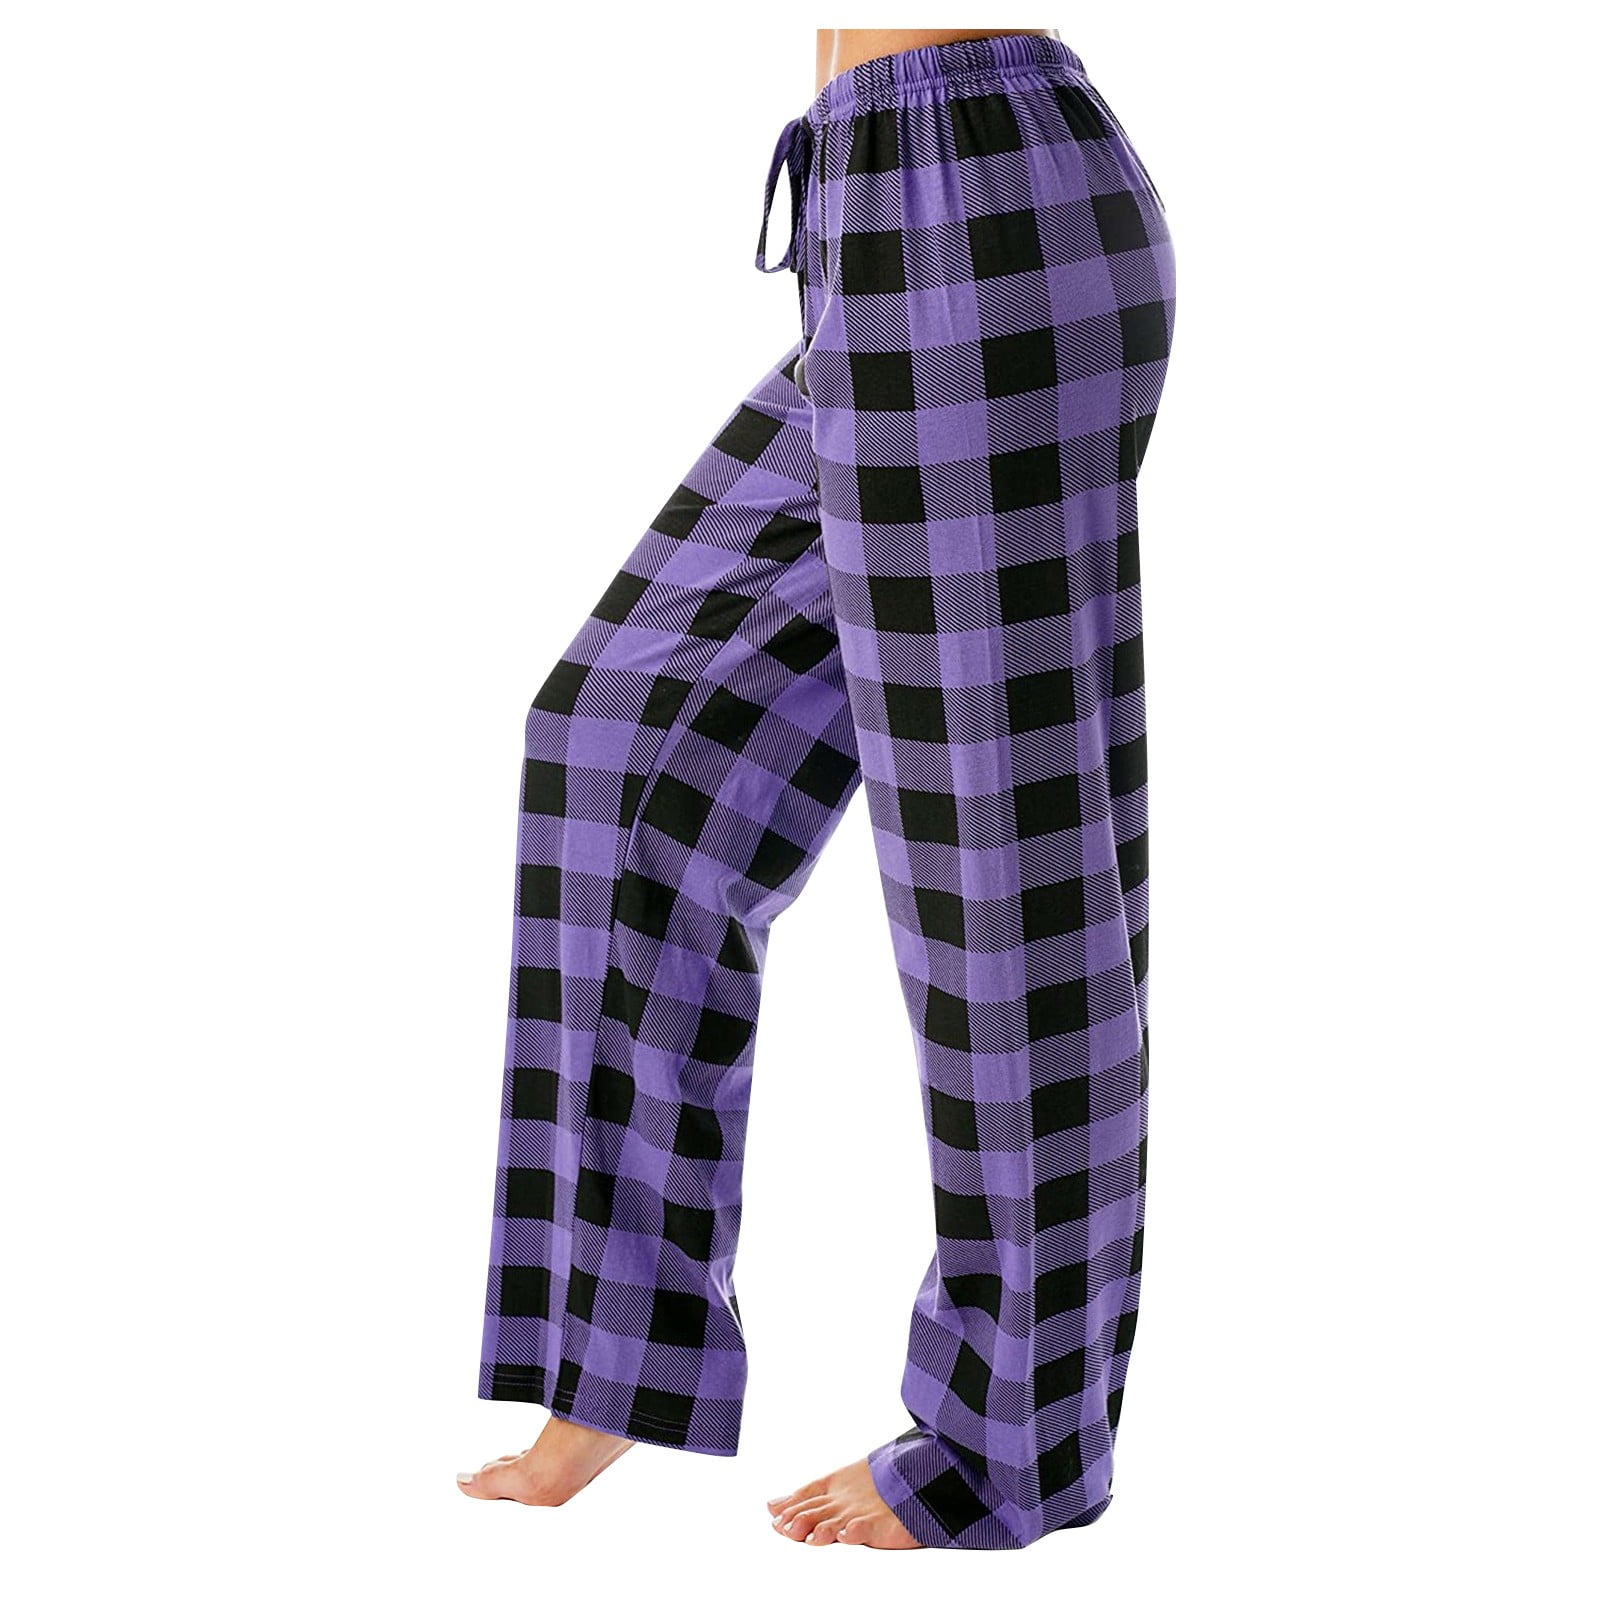 Qcmgmg Plaid Pajama Pants Plaid Drawstring Wide Leg Pj Pants for